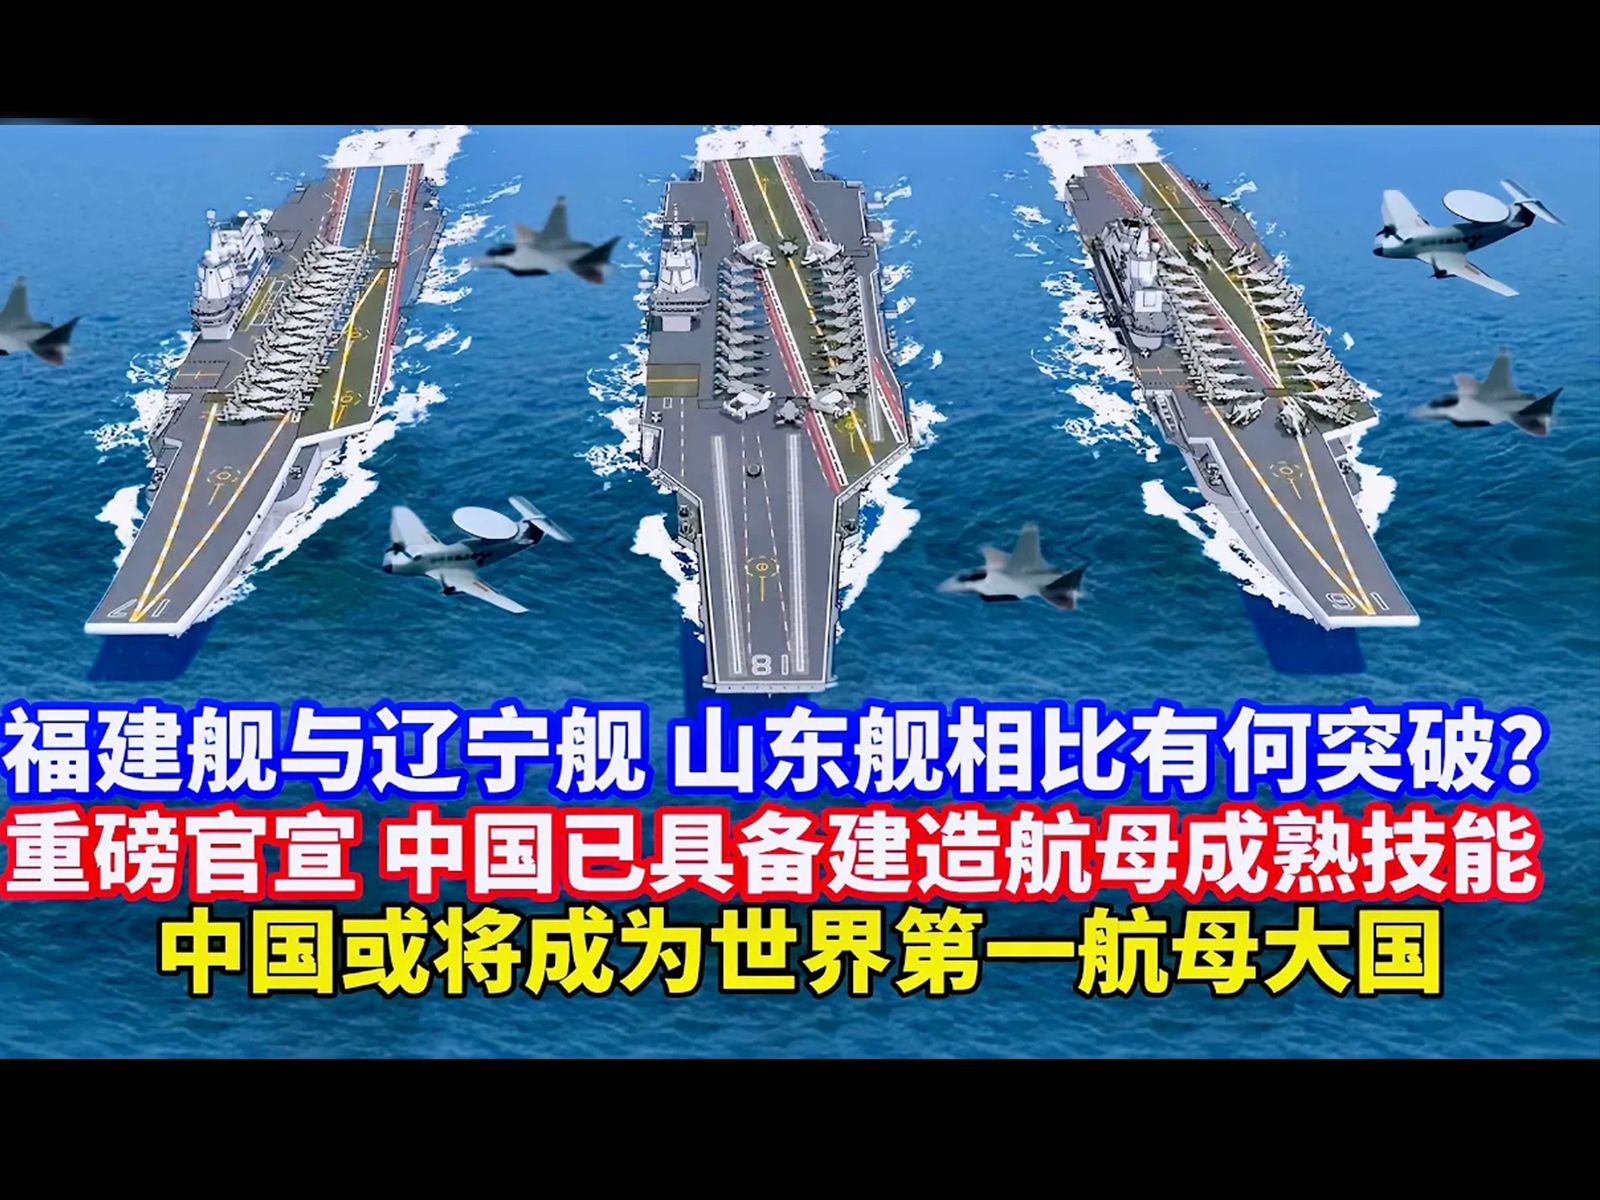 大方展示重磅官宣!中国已具备成熟航母建造技术和能力